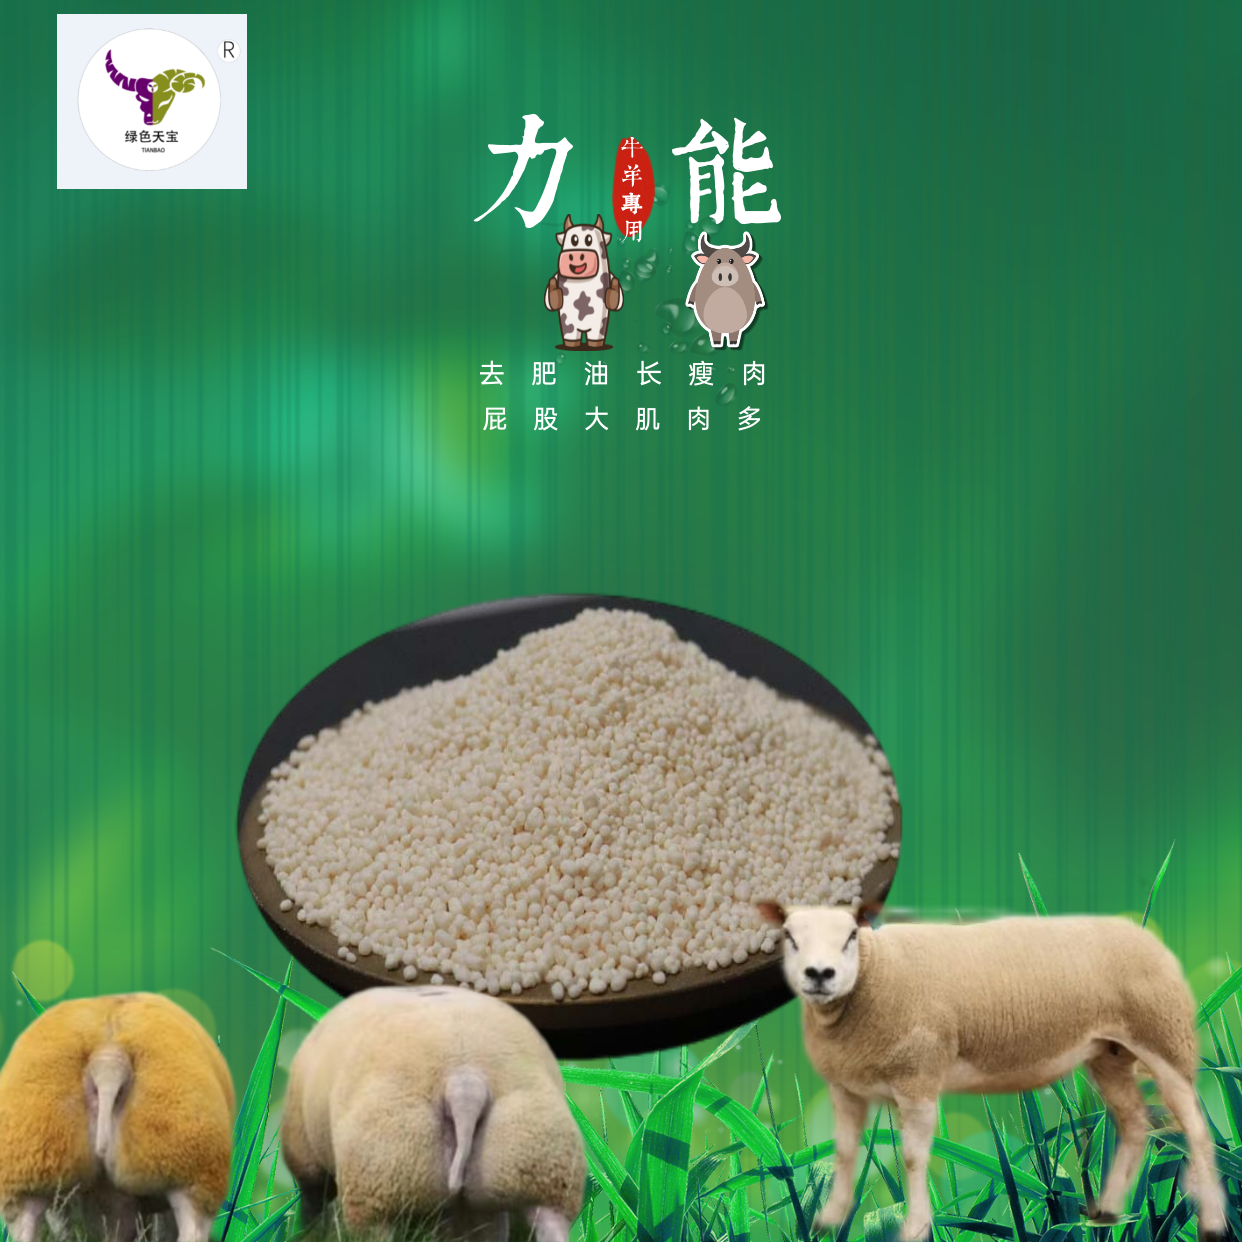 羊羊催肥剂  包膜胍基乙酸增重小料改善体型提高消化吸收 加快育肥